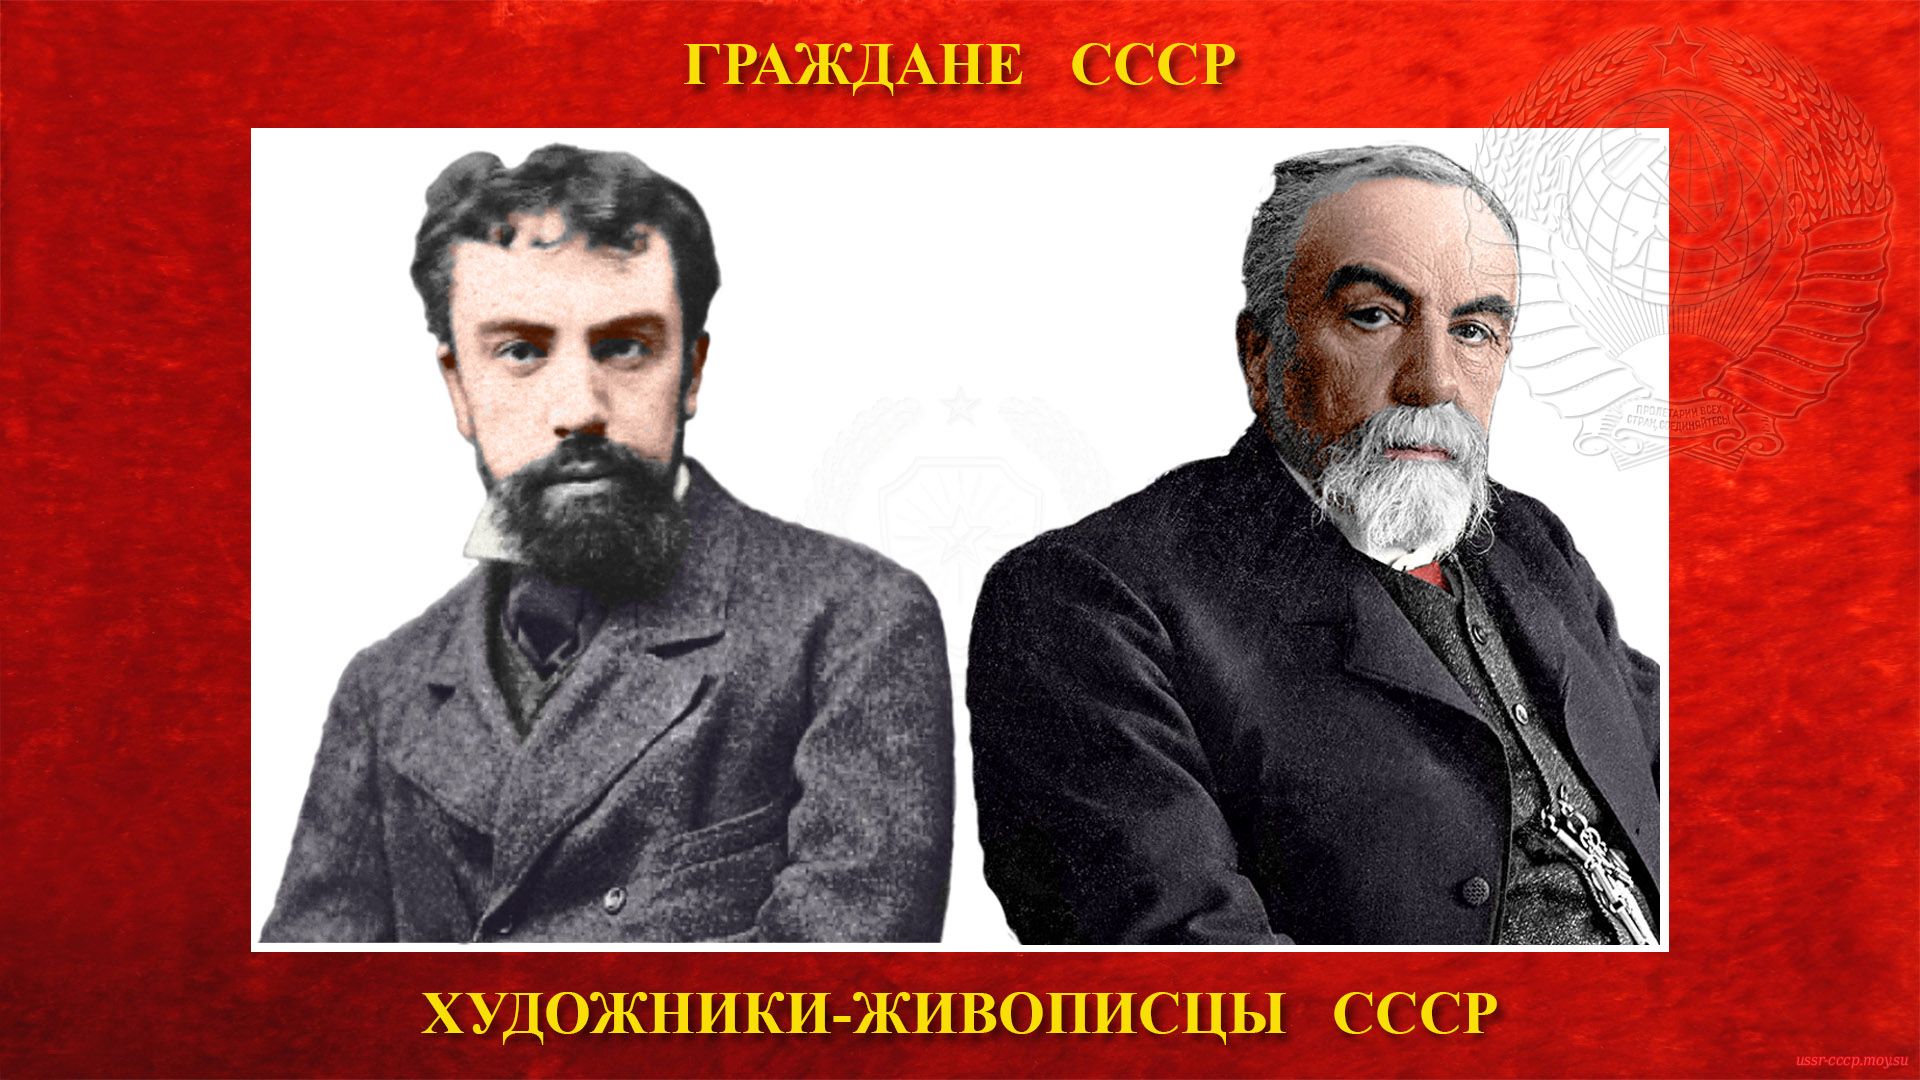 Поленов Василий Дмитриевич (биография)